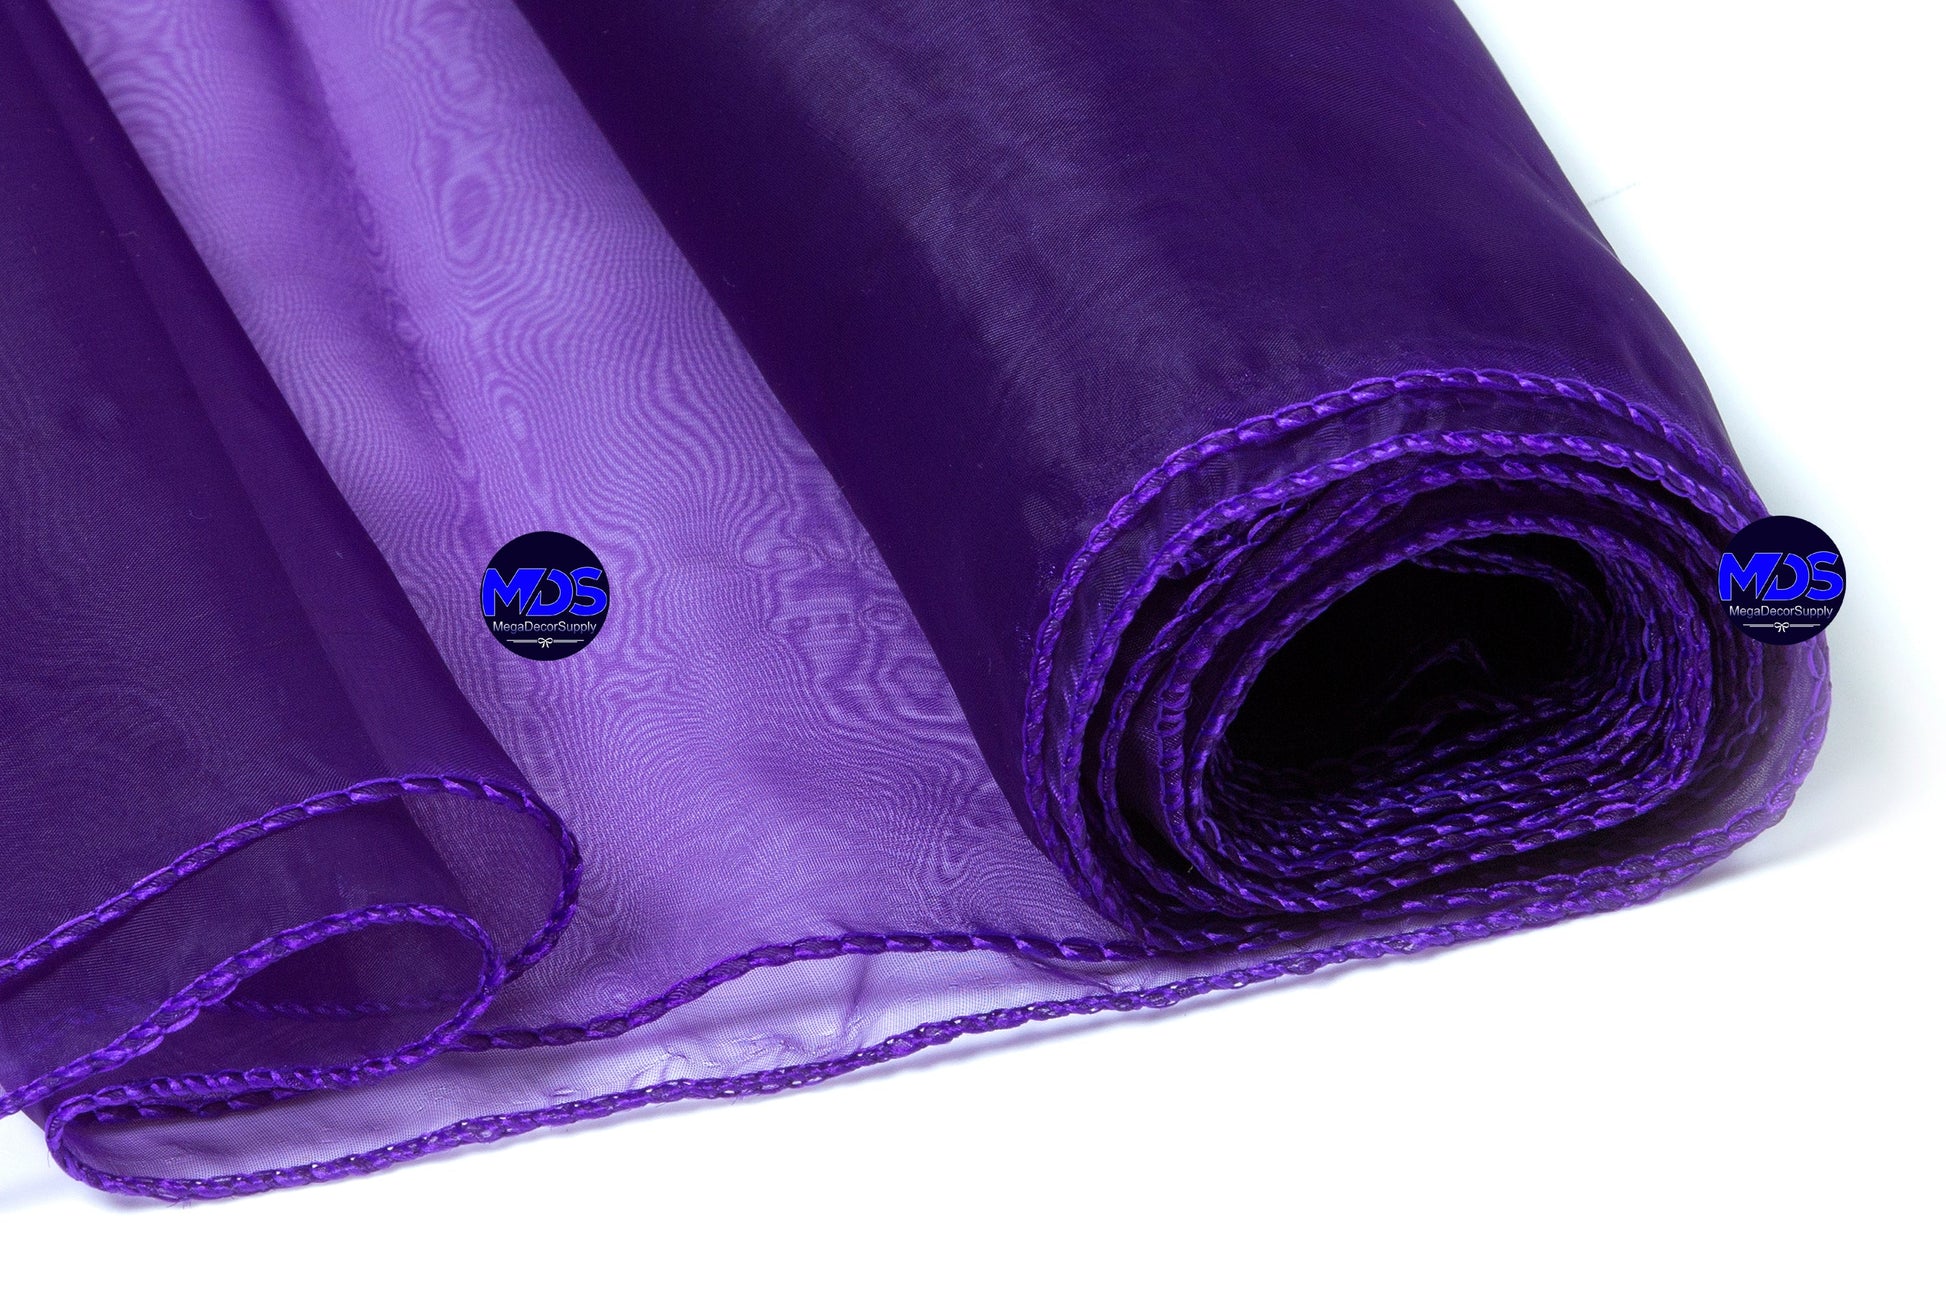 Cadbury Purple,7583a66b-34c4-4e0d-812b-dd6b9df8df0b